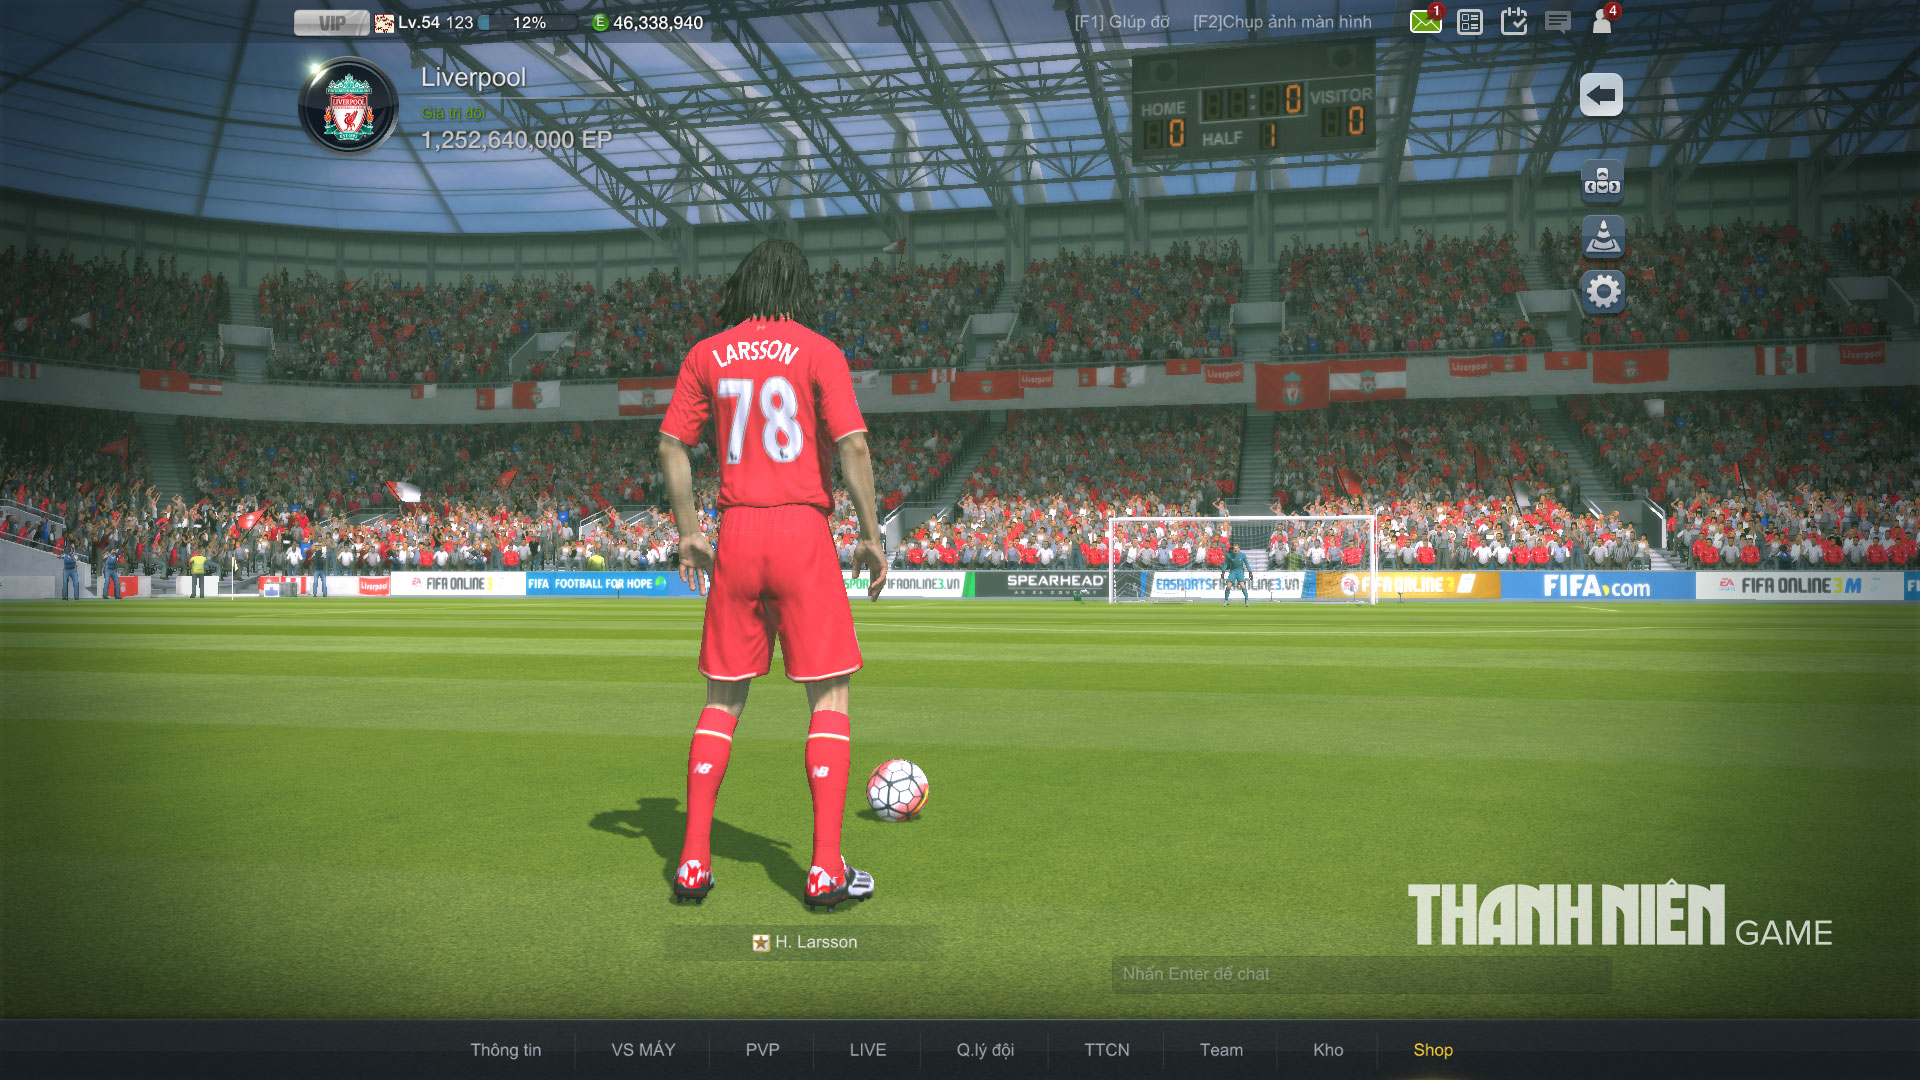 FIFA ONLINE 3  Game online bóng đá cực HOT và hấp dẫn